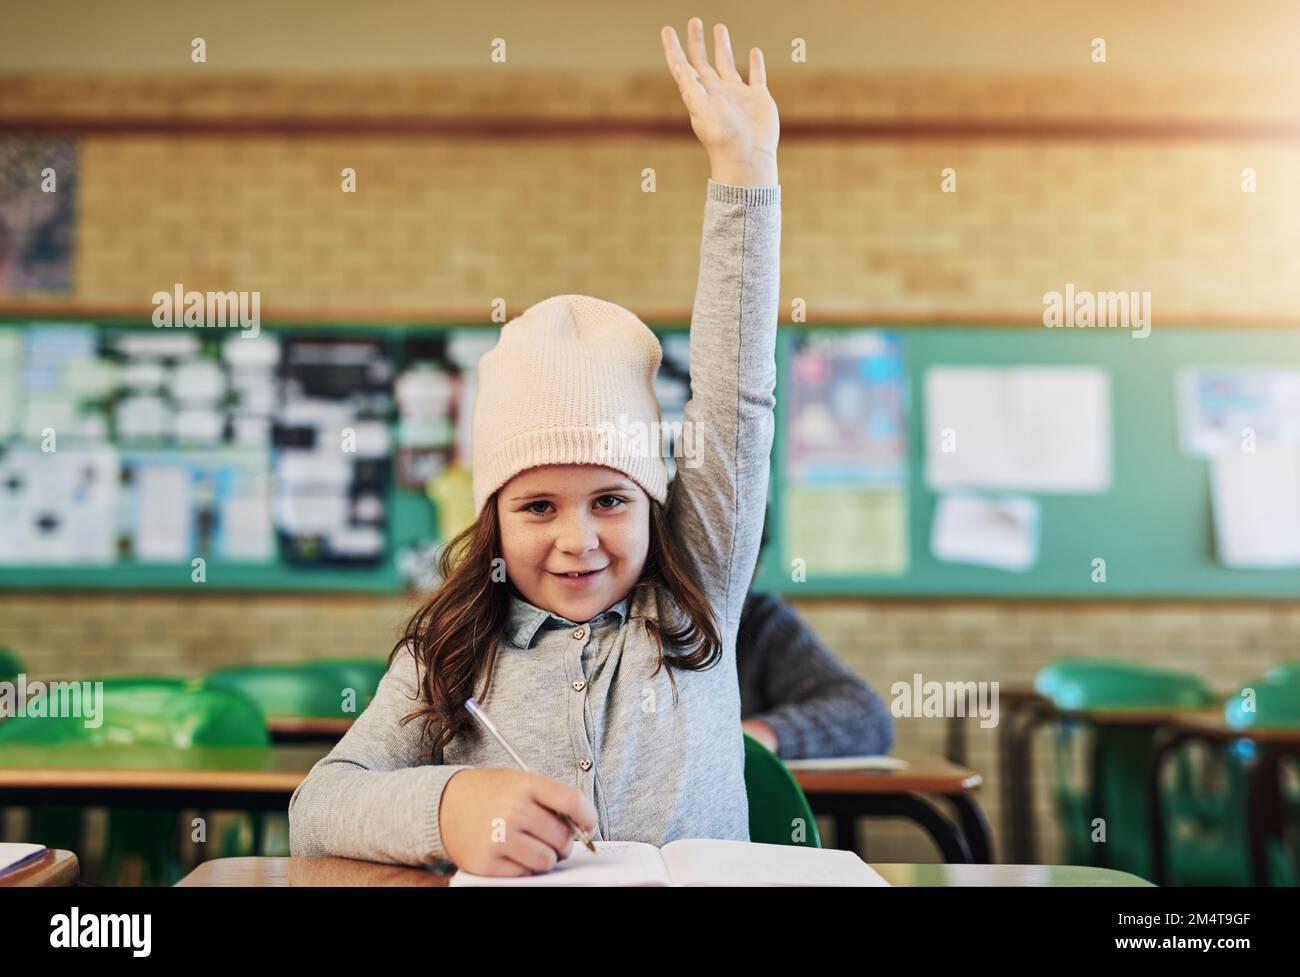 Il nostro piccolo genio della classe. Ritratto di una adorabile studentessa elementare che alza la mano in classe. Foto Stock